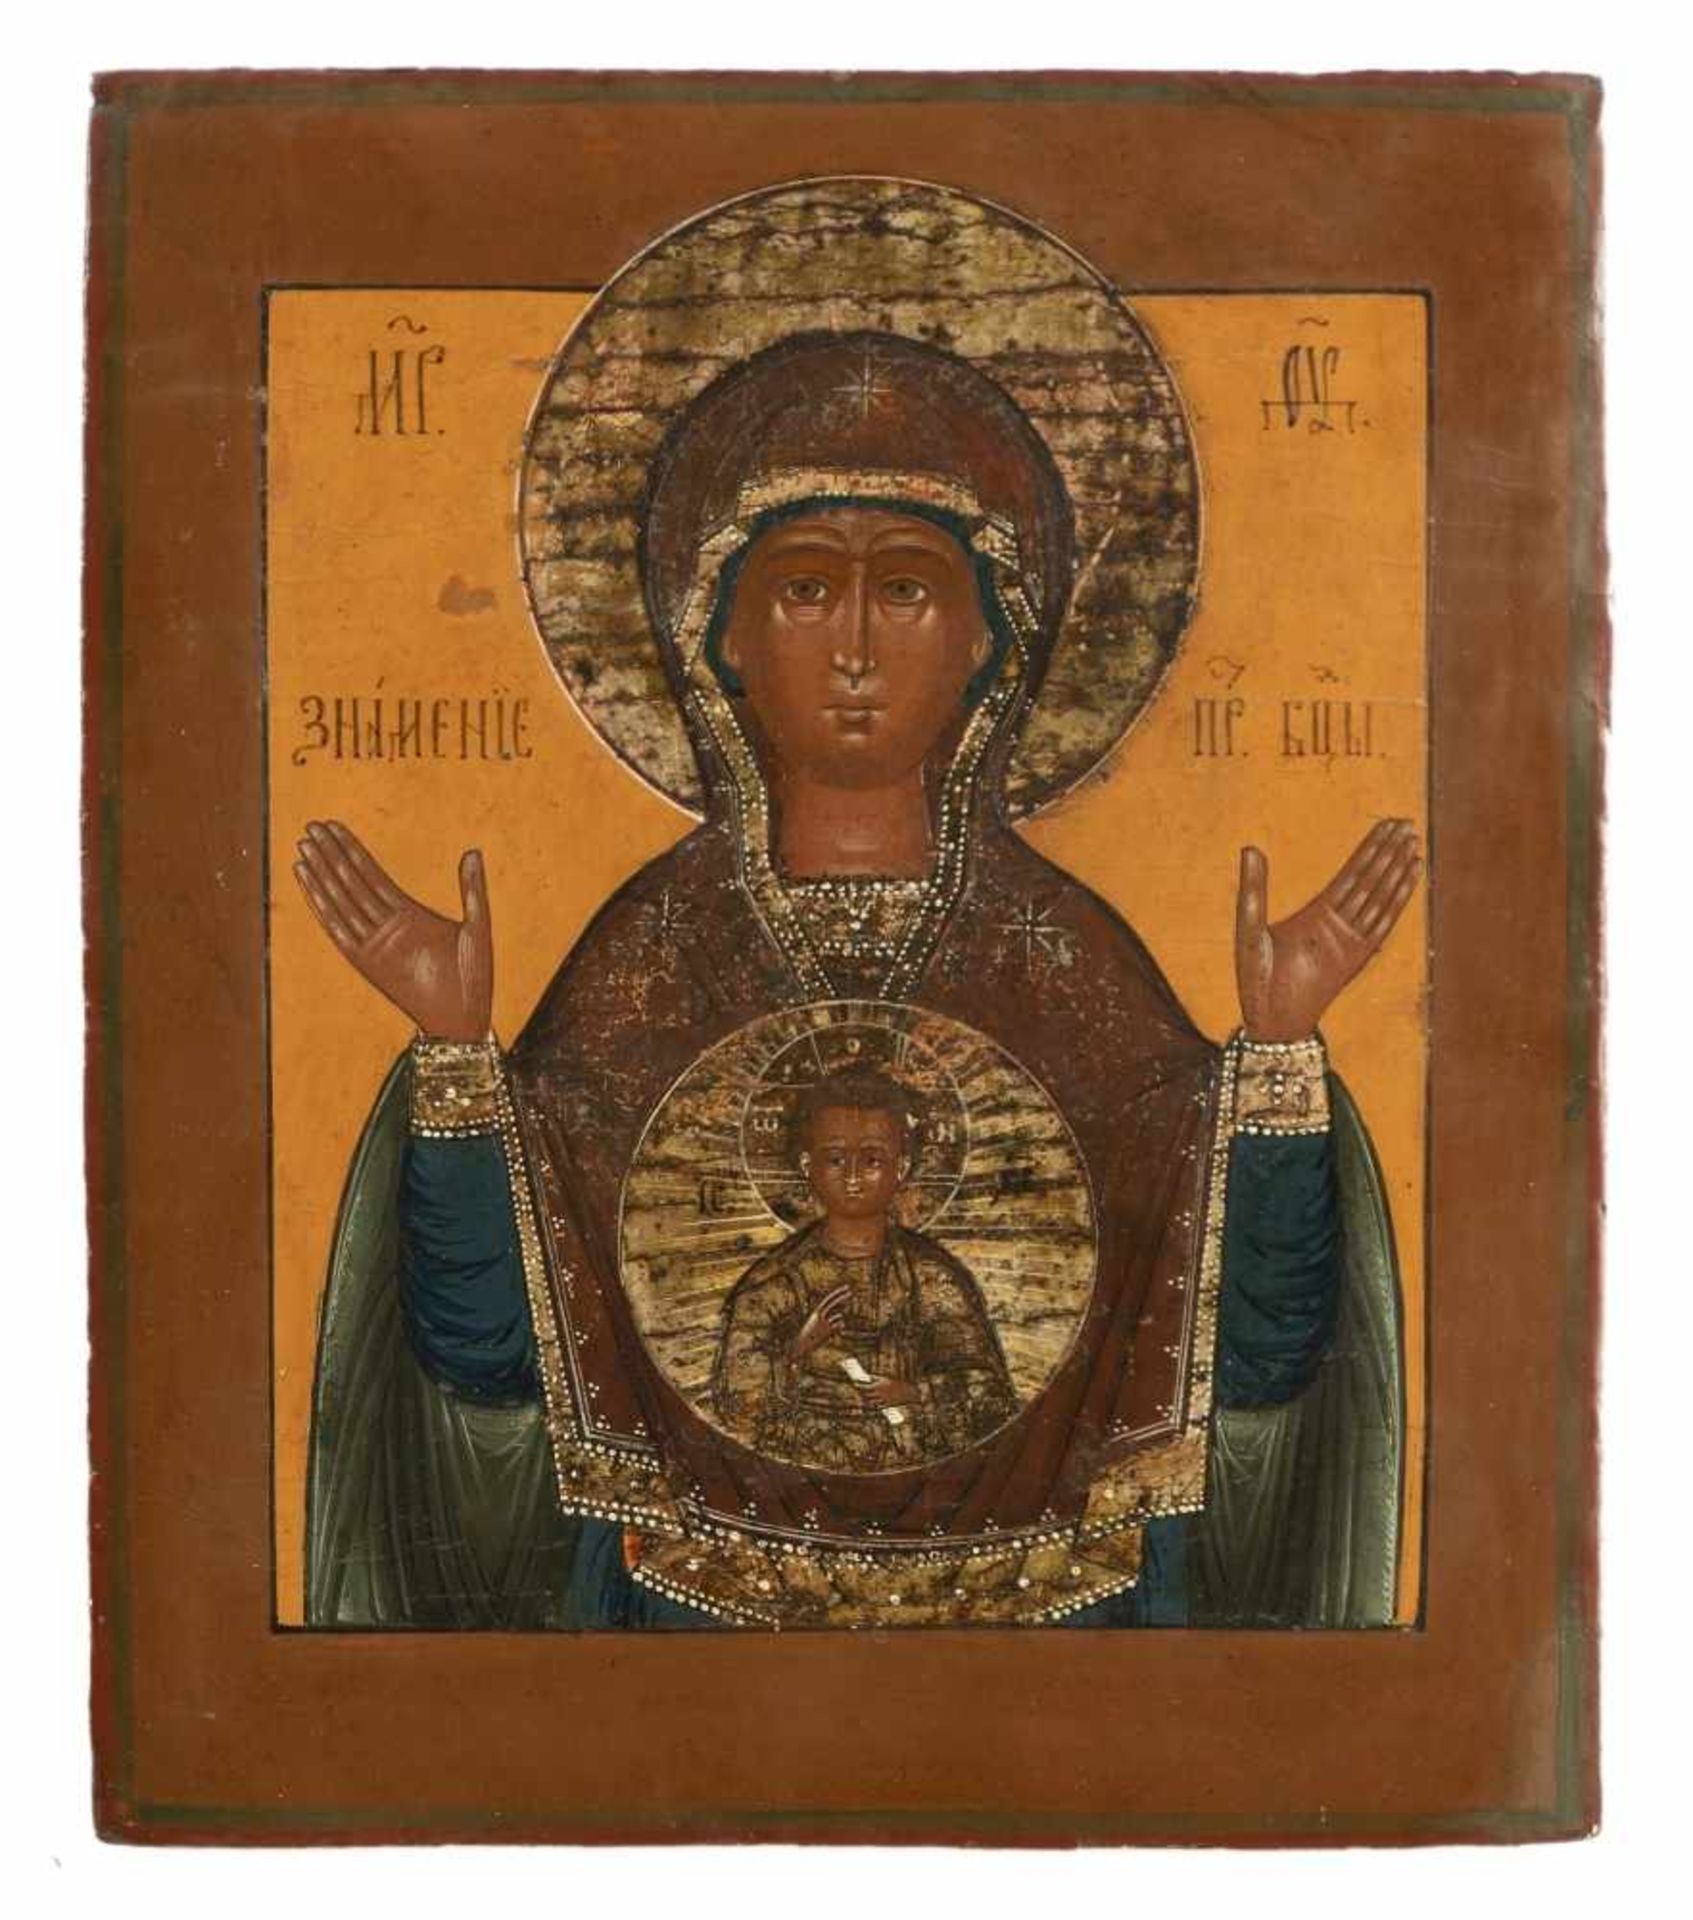 Gottesmutter des Zeichens (Znamenie)Russische Ikone, Tempera / Holz, 19. Jh.30,5 x 26 cmDas Urbild